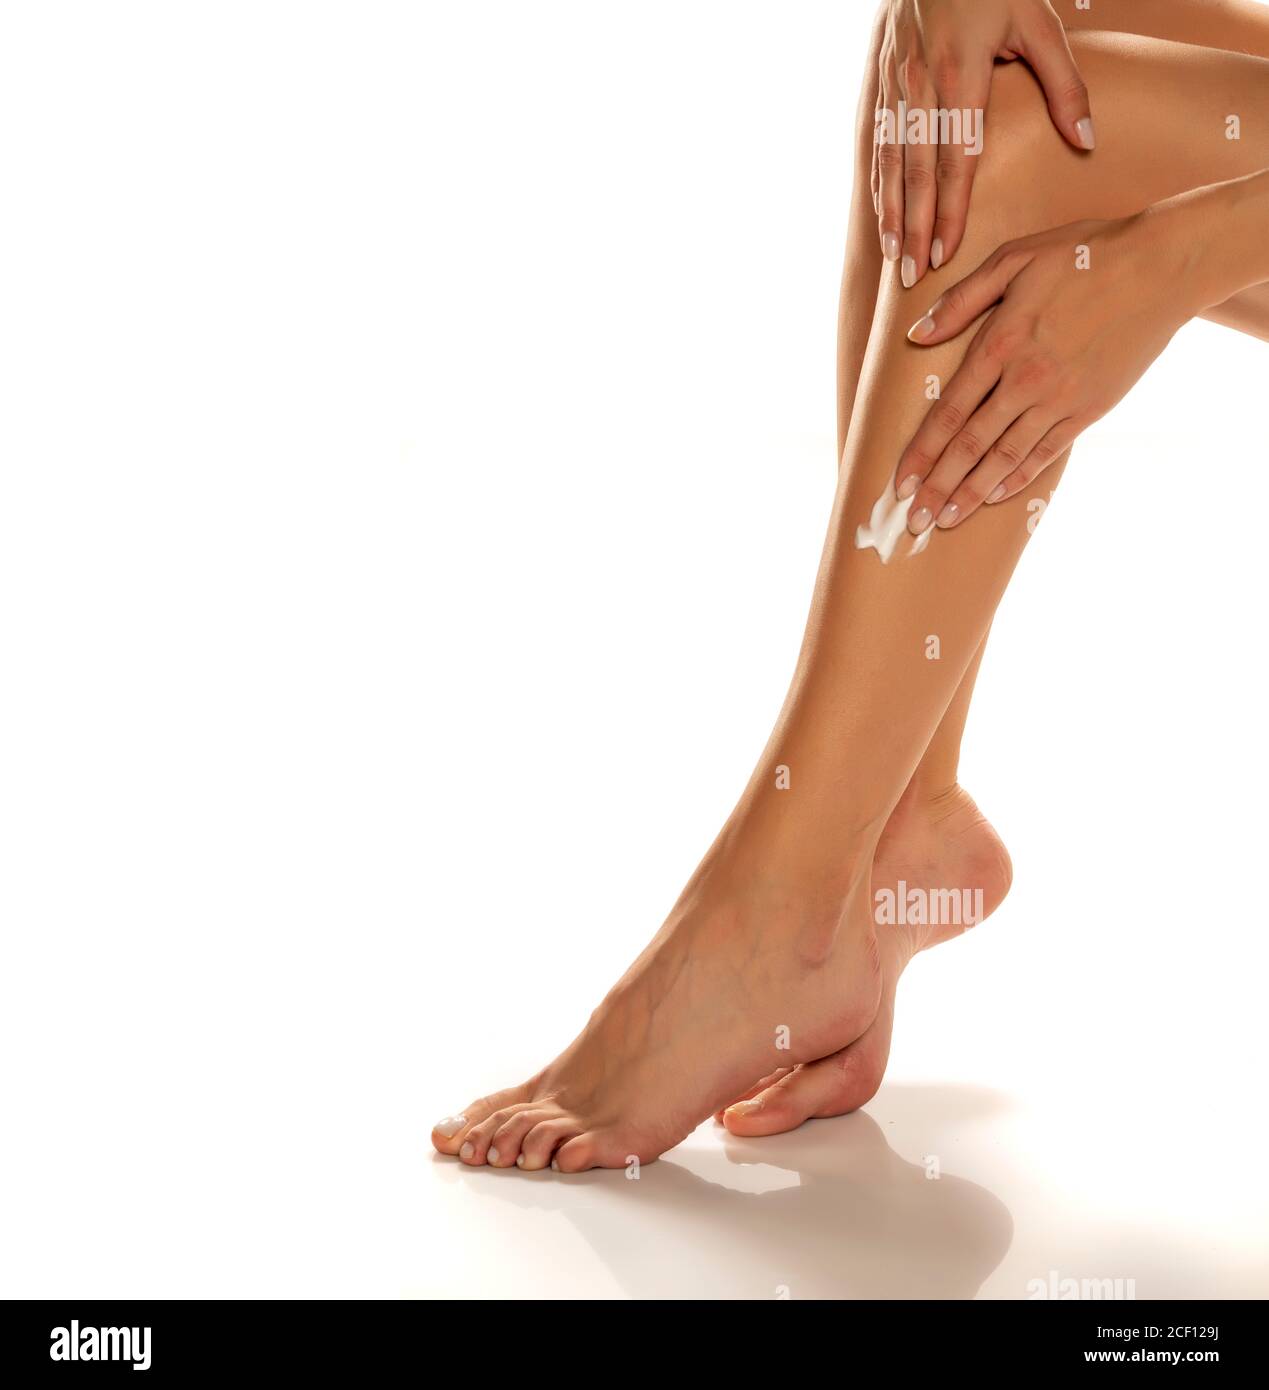 femme appliquant de la lotion sur ses jambes sur fond blanc Banque D'Images